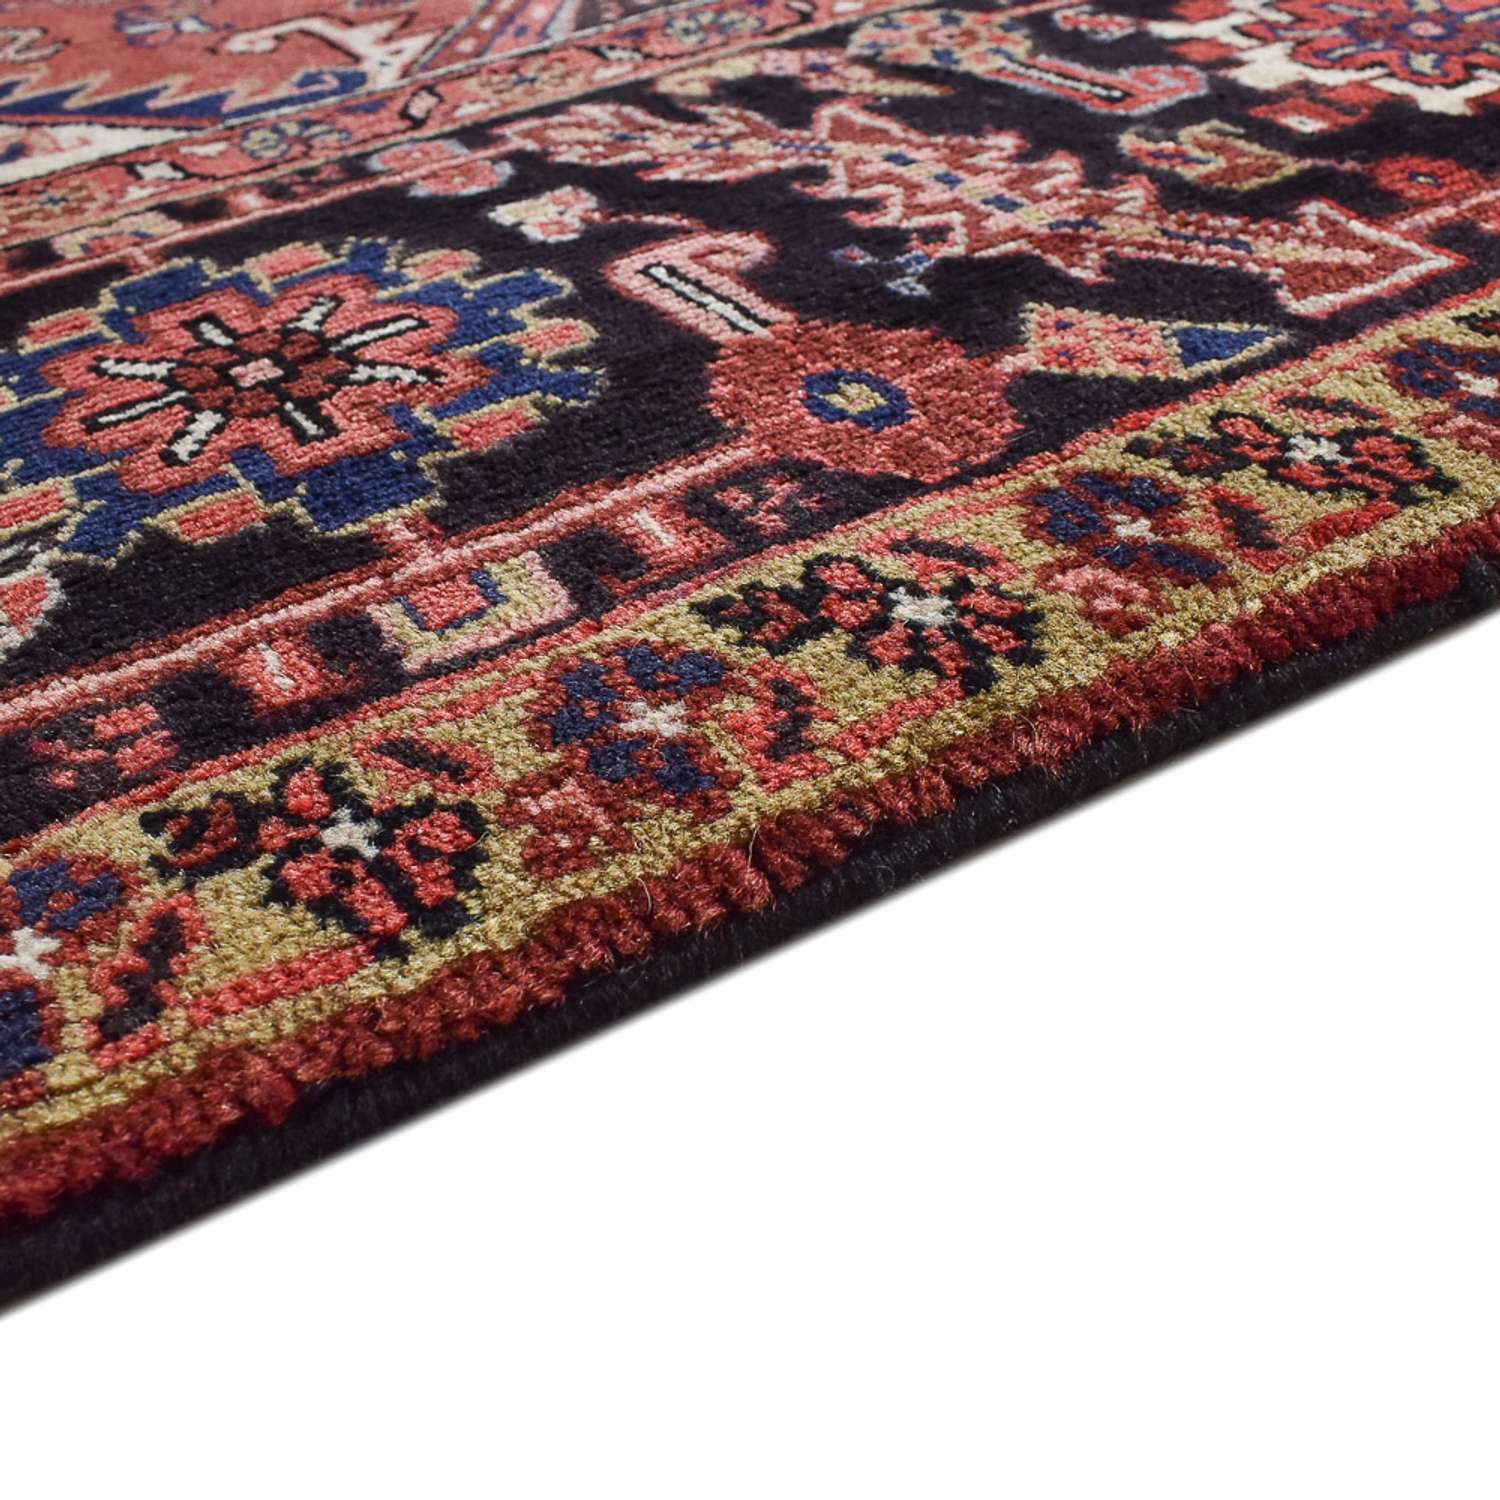 Persisk matta - Nomadic särskild form  - 372 x 302 cm - röd